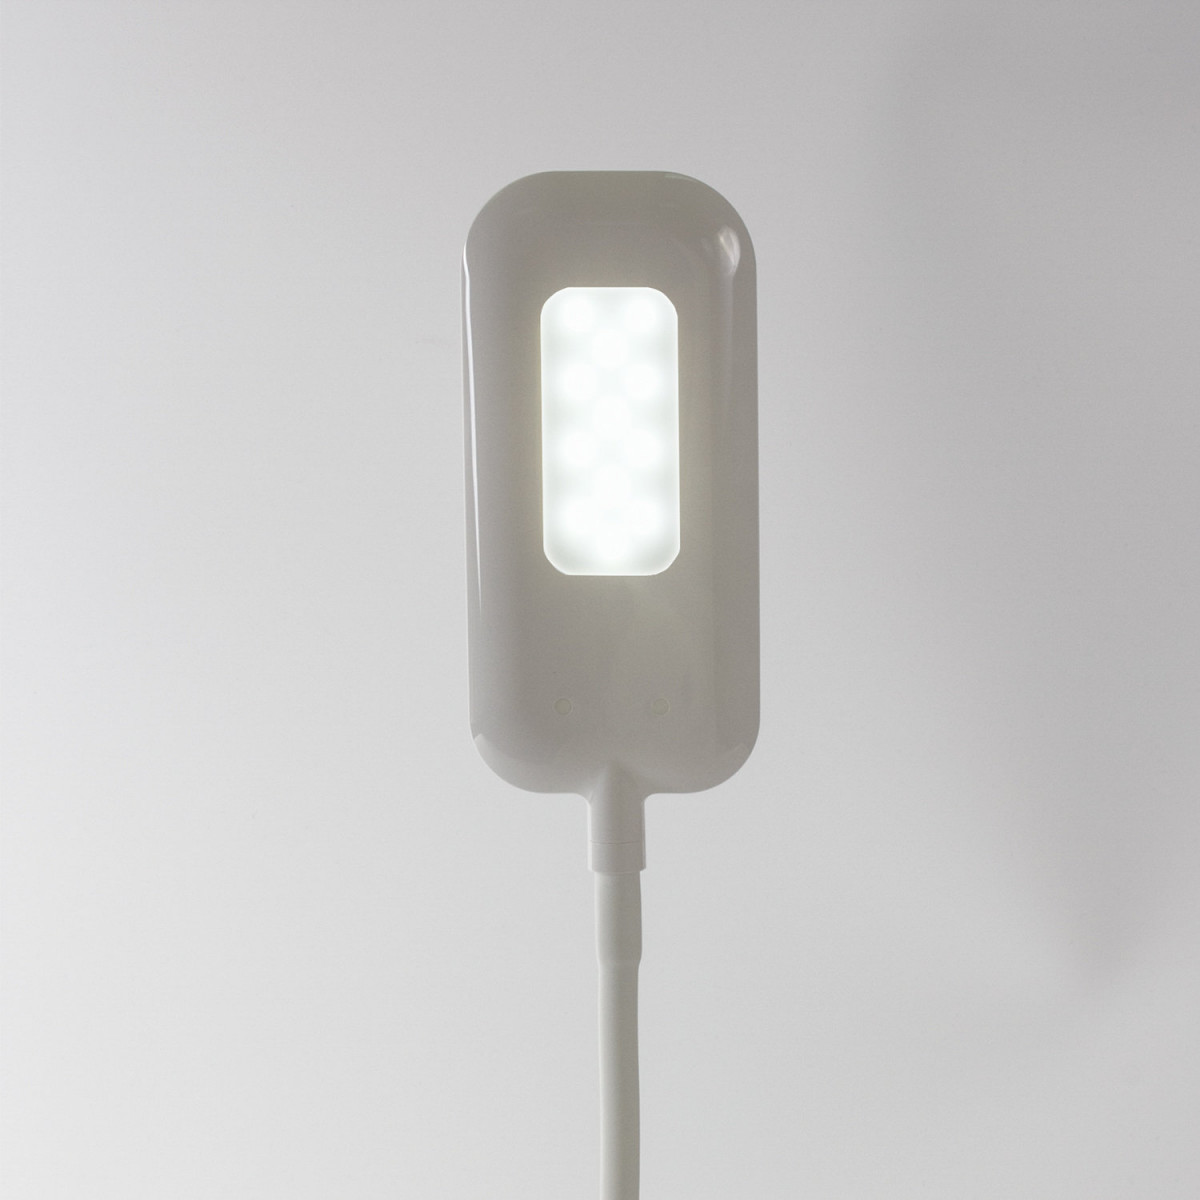 Светильник настольный SONNEN BR-819C, на прищепке, светодиодный, 8 Вт, белый, 236667 (арт. 236667)